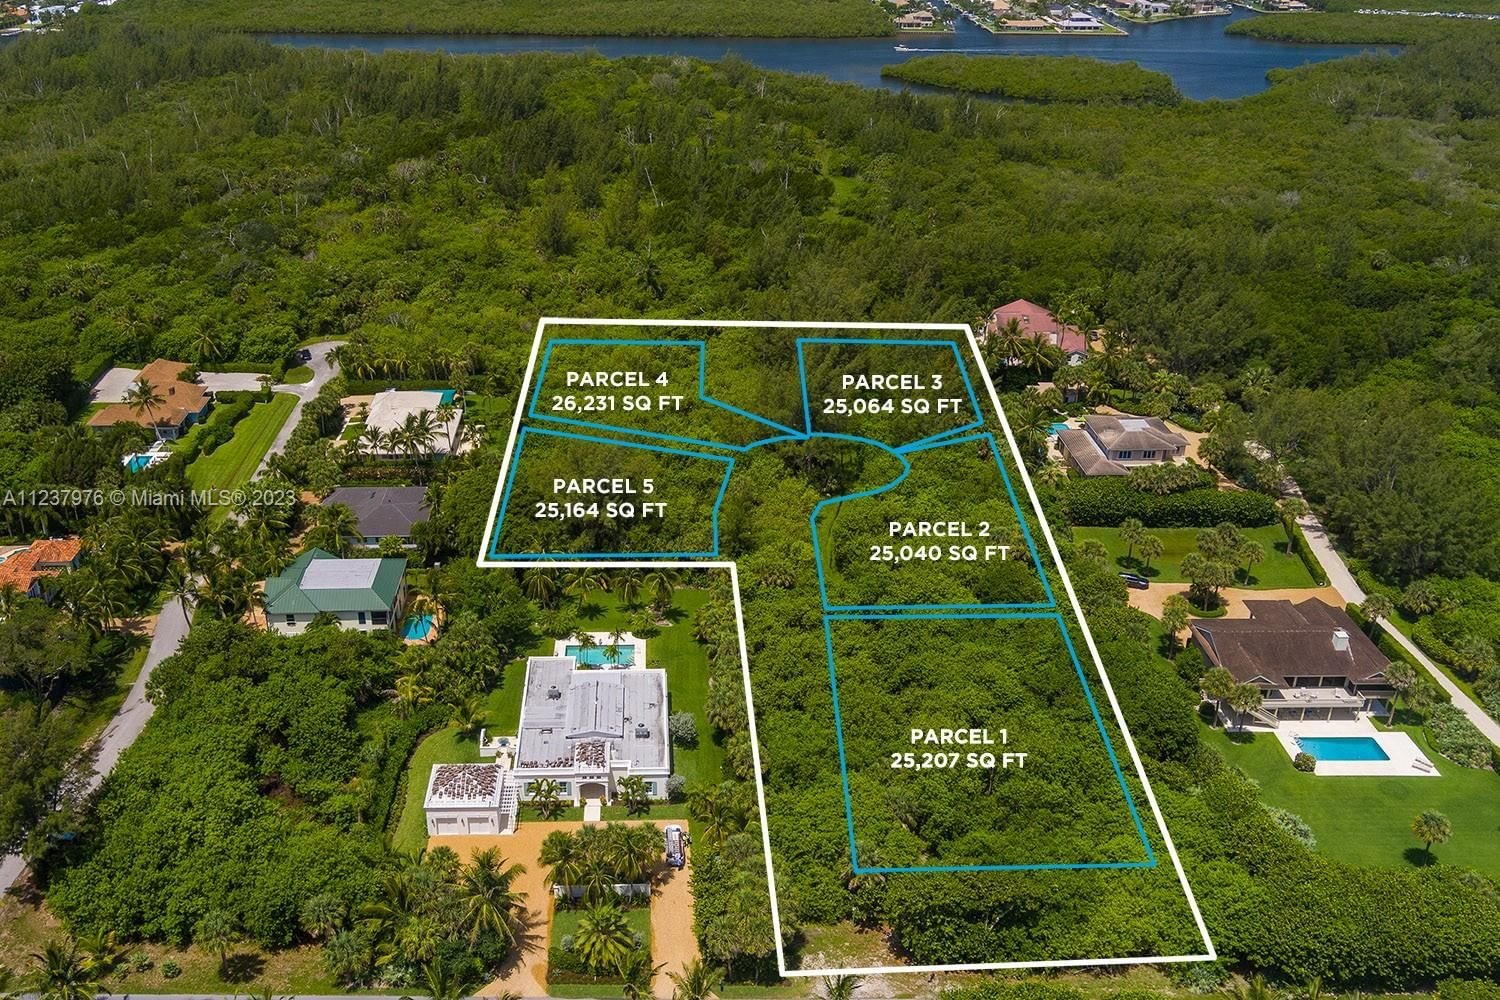 Real estate property located at 4 Bon Aire Desire Avenue, Martin County, Bon Aire Desire, Hobe Sound, FL